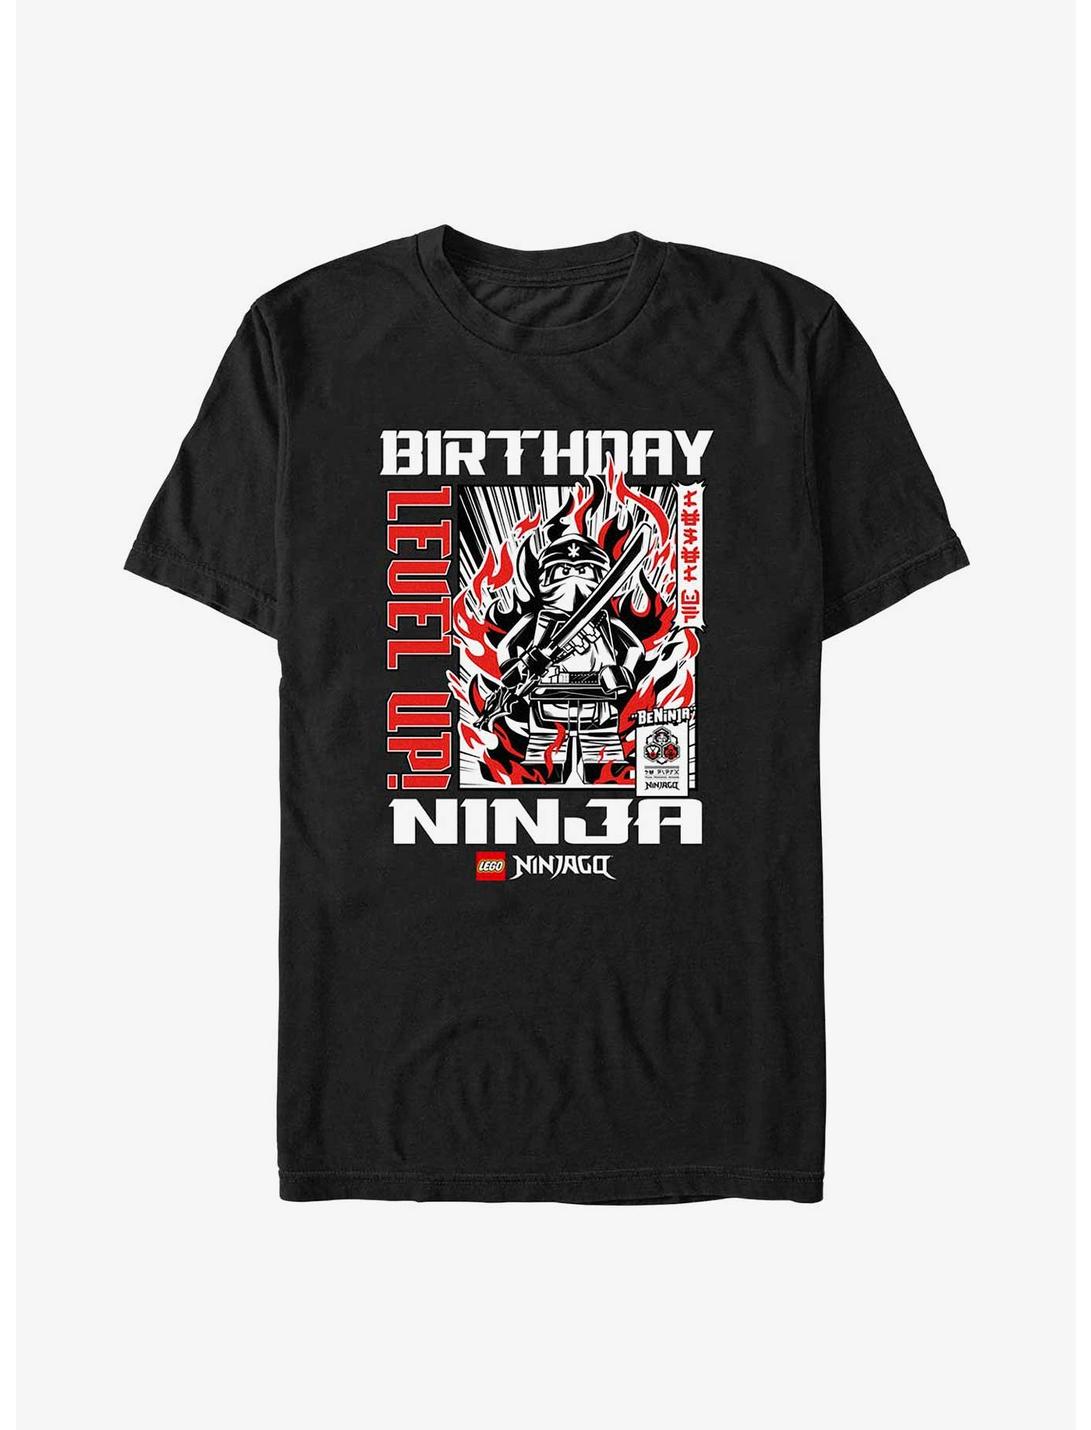 LEGO Ninjago Birthday Ninja T-Shirt, BLACK, hi-res